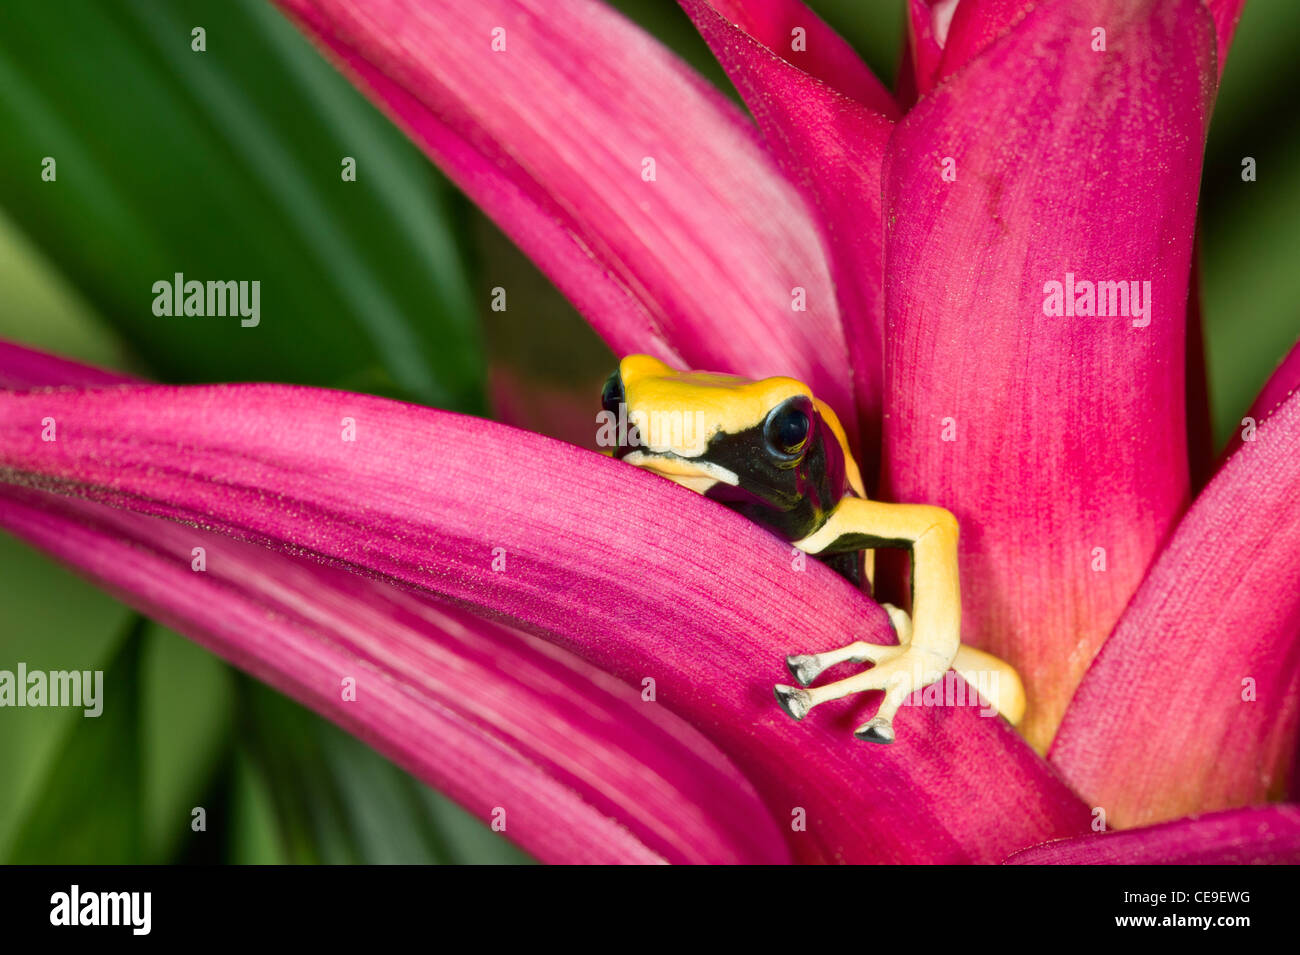 Jaune et Noir Dart Frog sur plante rose vif Banque D'Images